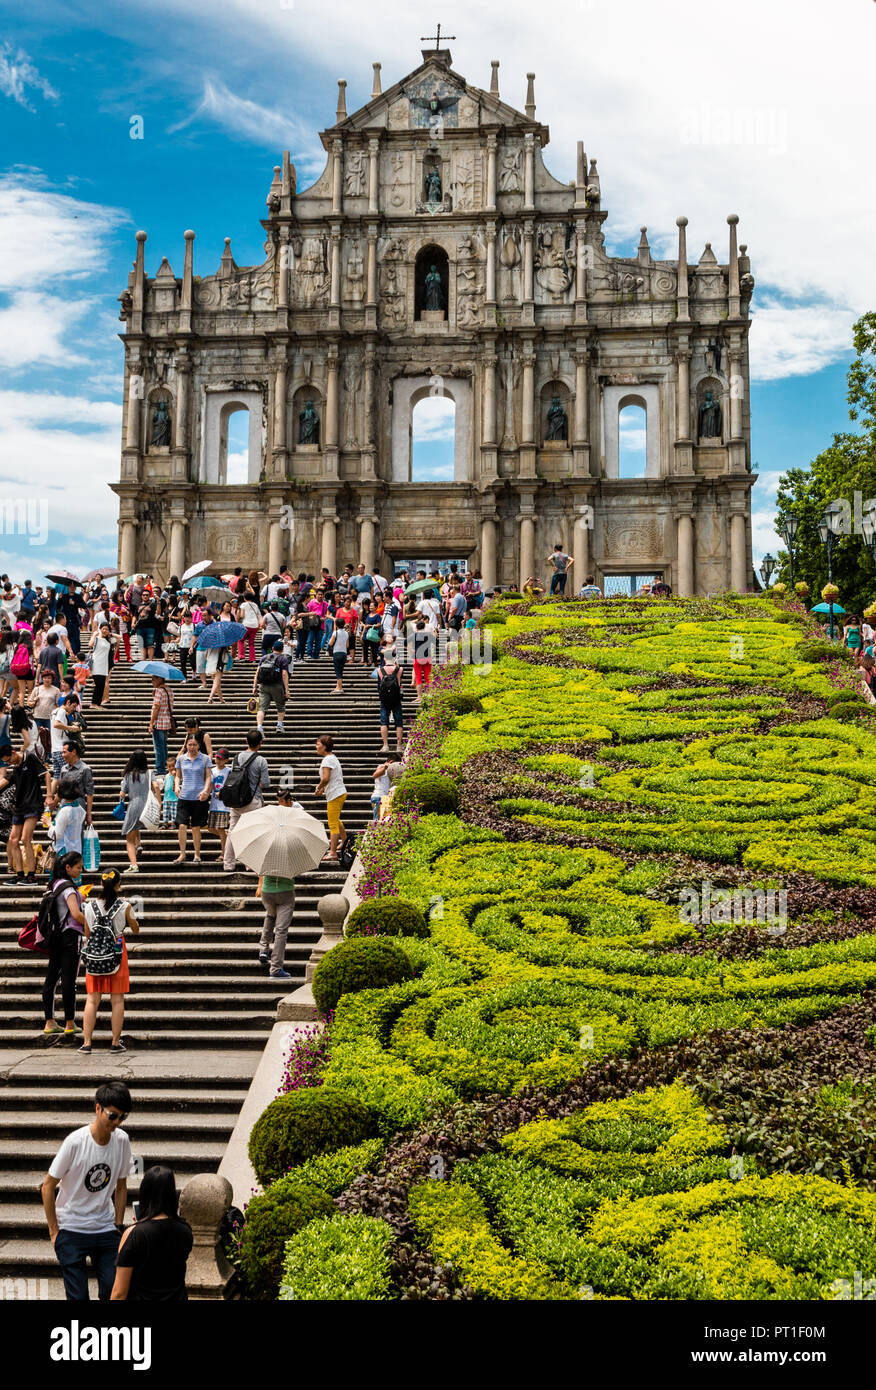 Macao, Cina - 11 luglio 2014: la bella vista della famosa attrazione turistica 'Le Rovine di San Paolo" con la scalinata e arbusti. Il portoghese ex... Foto Stock